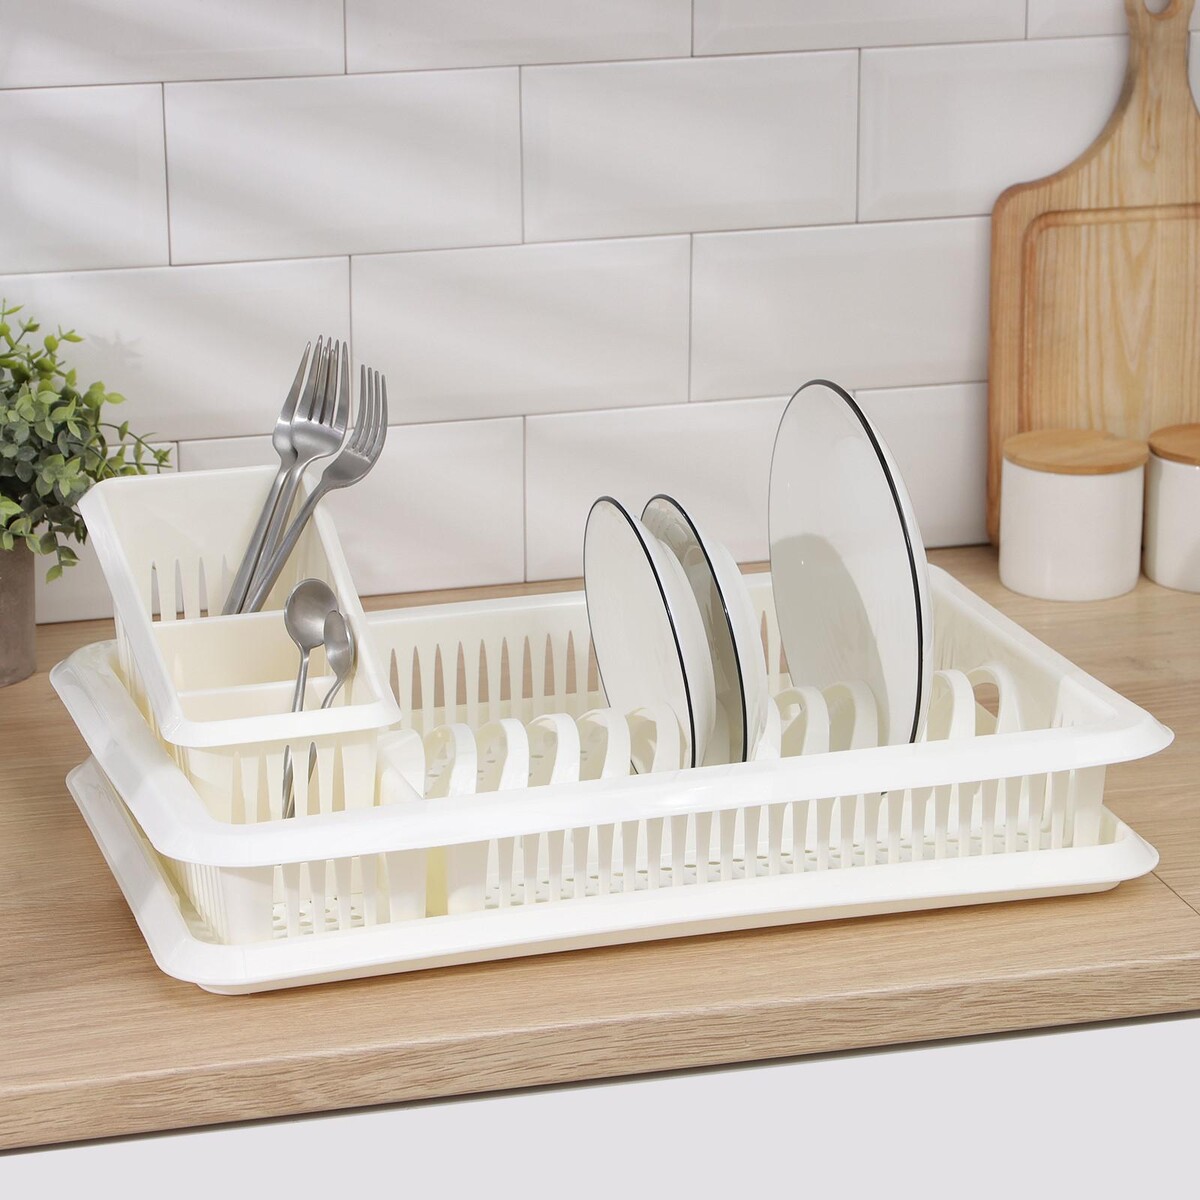 Сушилка для посуды с поддоном, с сушилкой для столовых приборов сушилка для посуды с поддоном 38×24×37 см белый